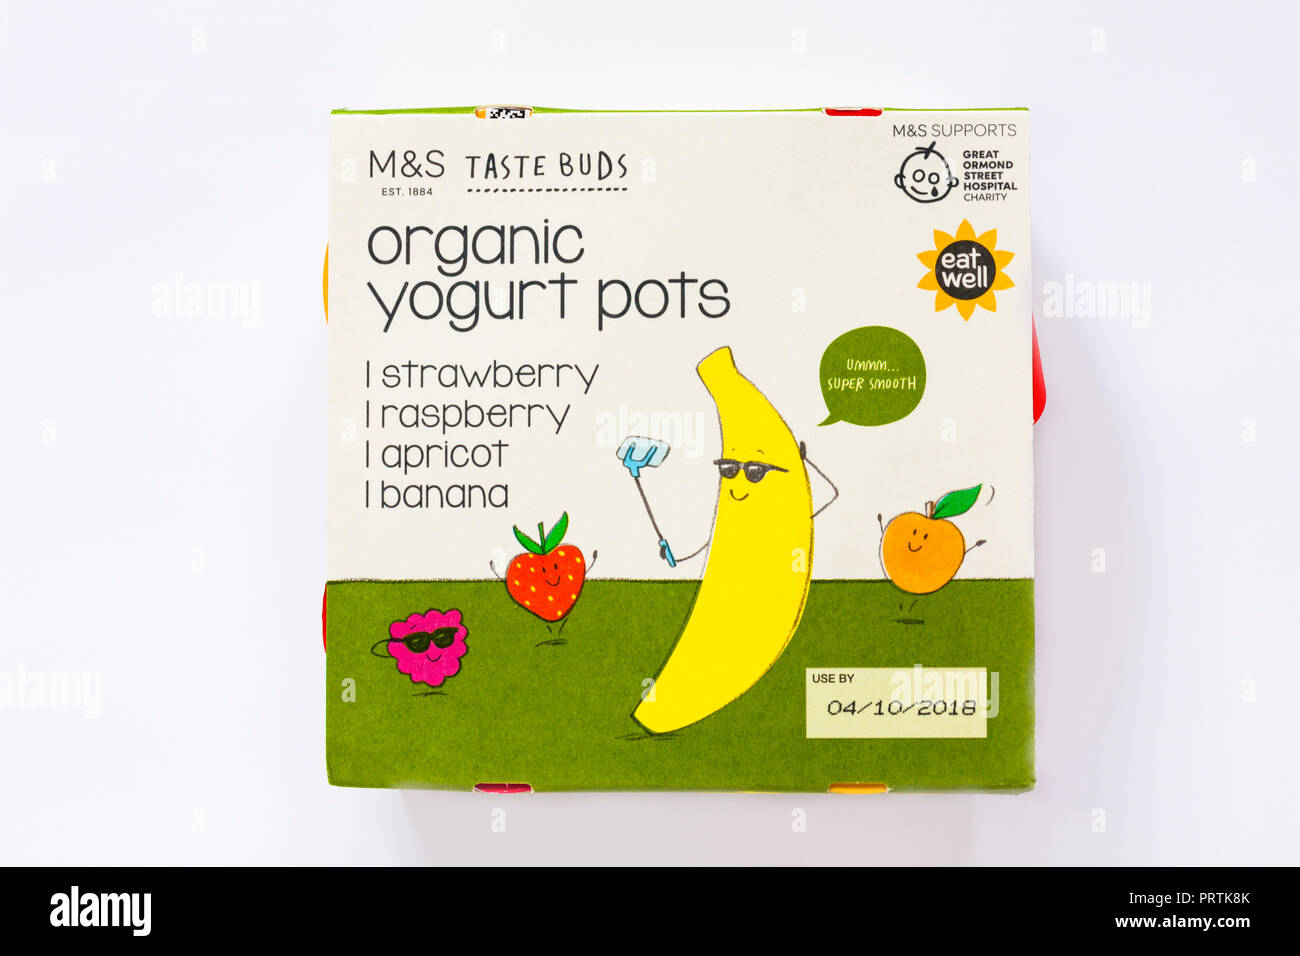 Pack von M&S Geschmacksnerven Bio-Joghurt Töpfe isoliert auf weißem Hintergrund - Erdbeere, Himbeere, Aprikose & Banane Aromen Stockfoto